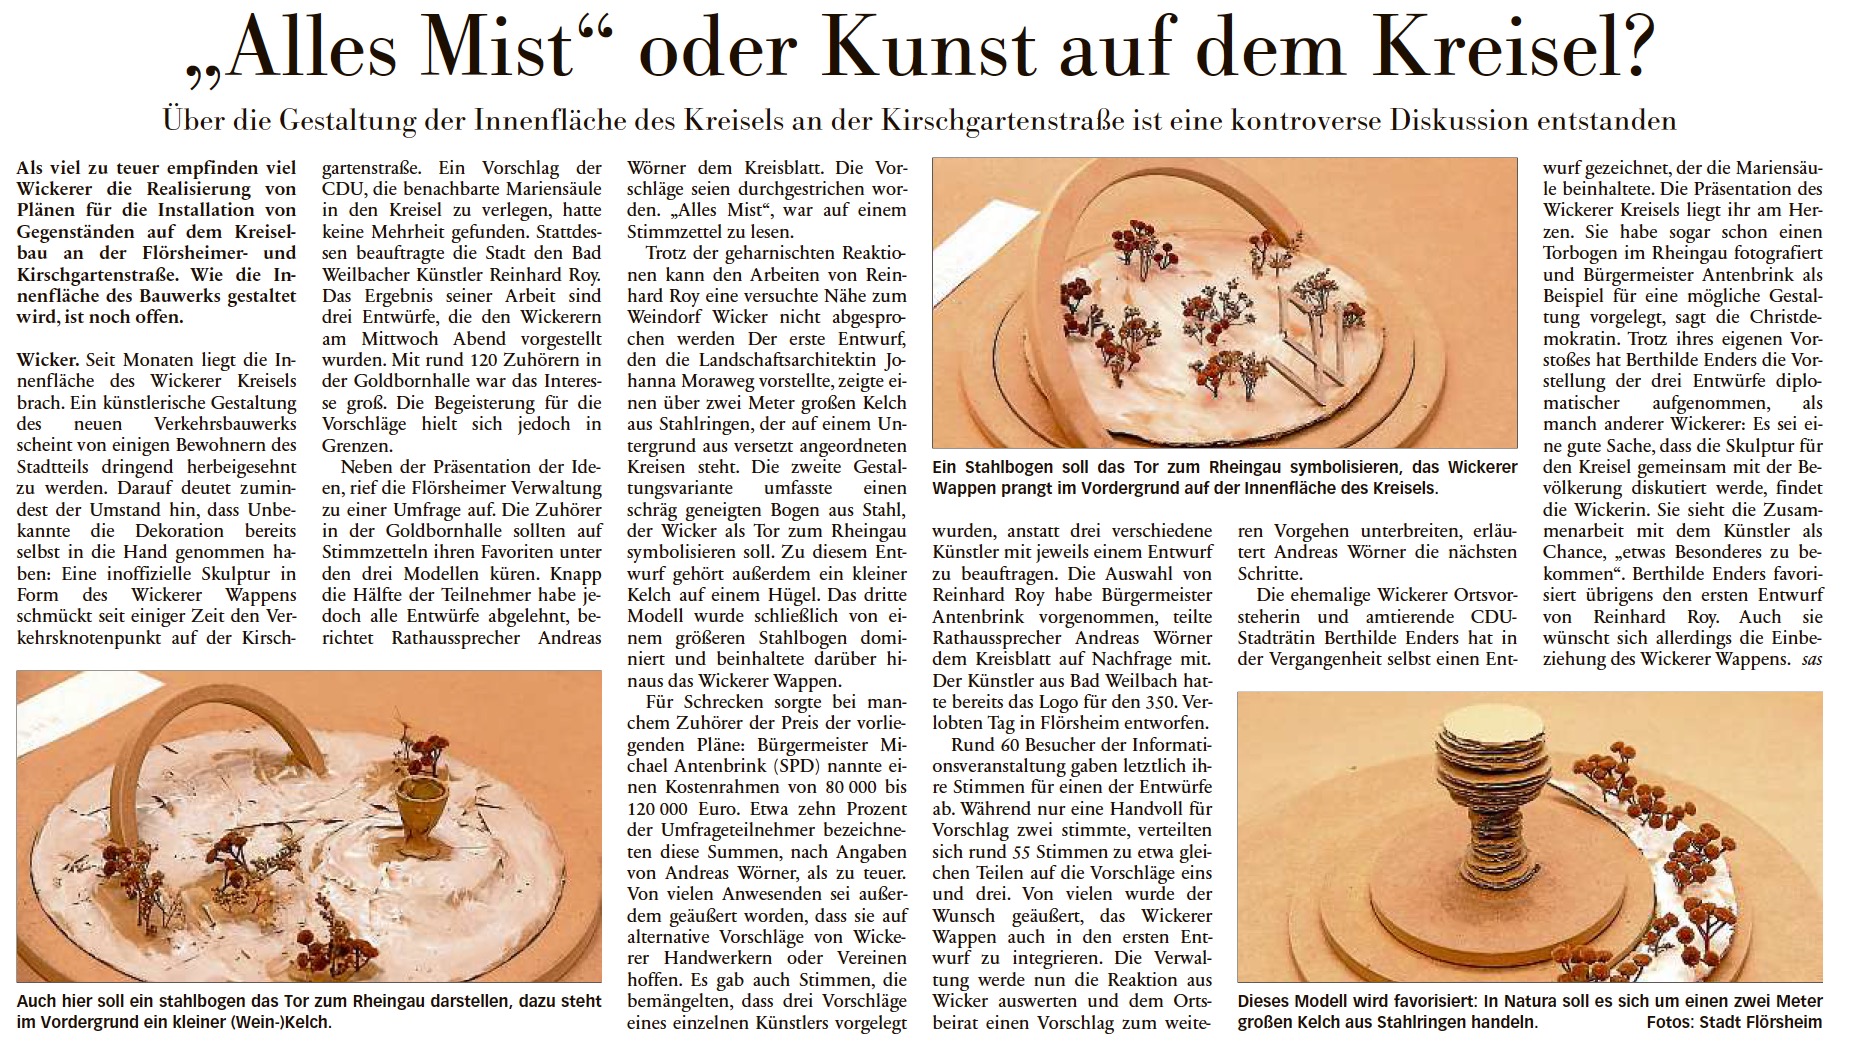 Höchster Kreisblatt: „Kreisels an der Kirschgartenstraße“